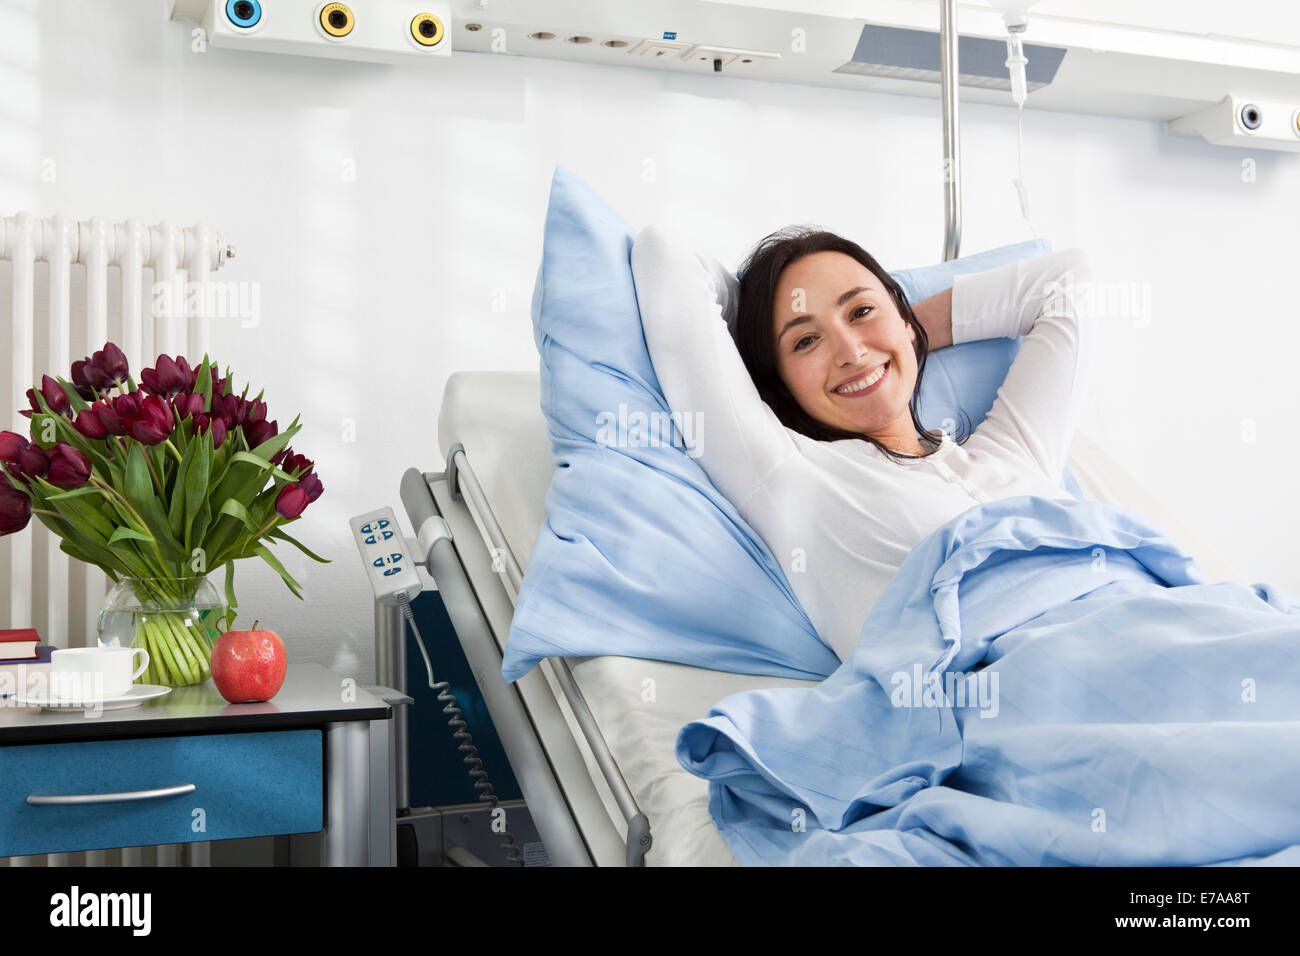 Un patient allongé sur un lit d'hôpital Banque D'Images